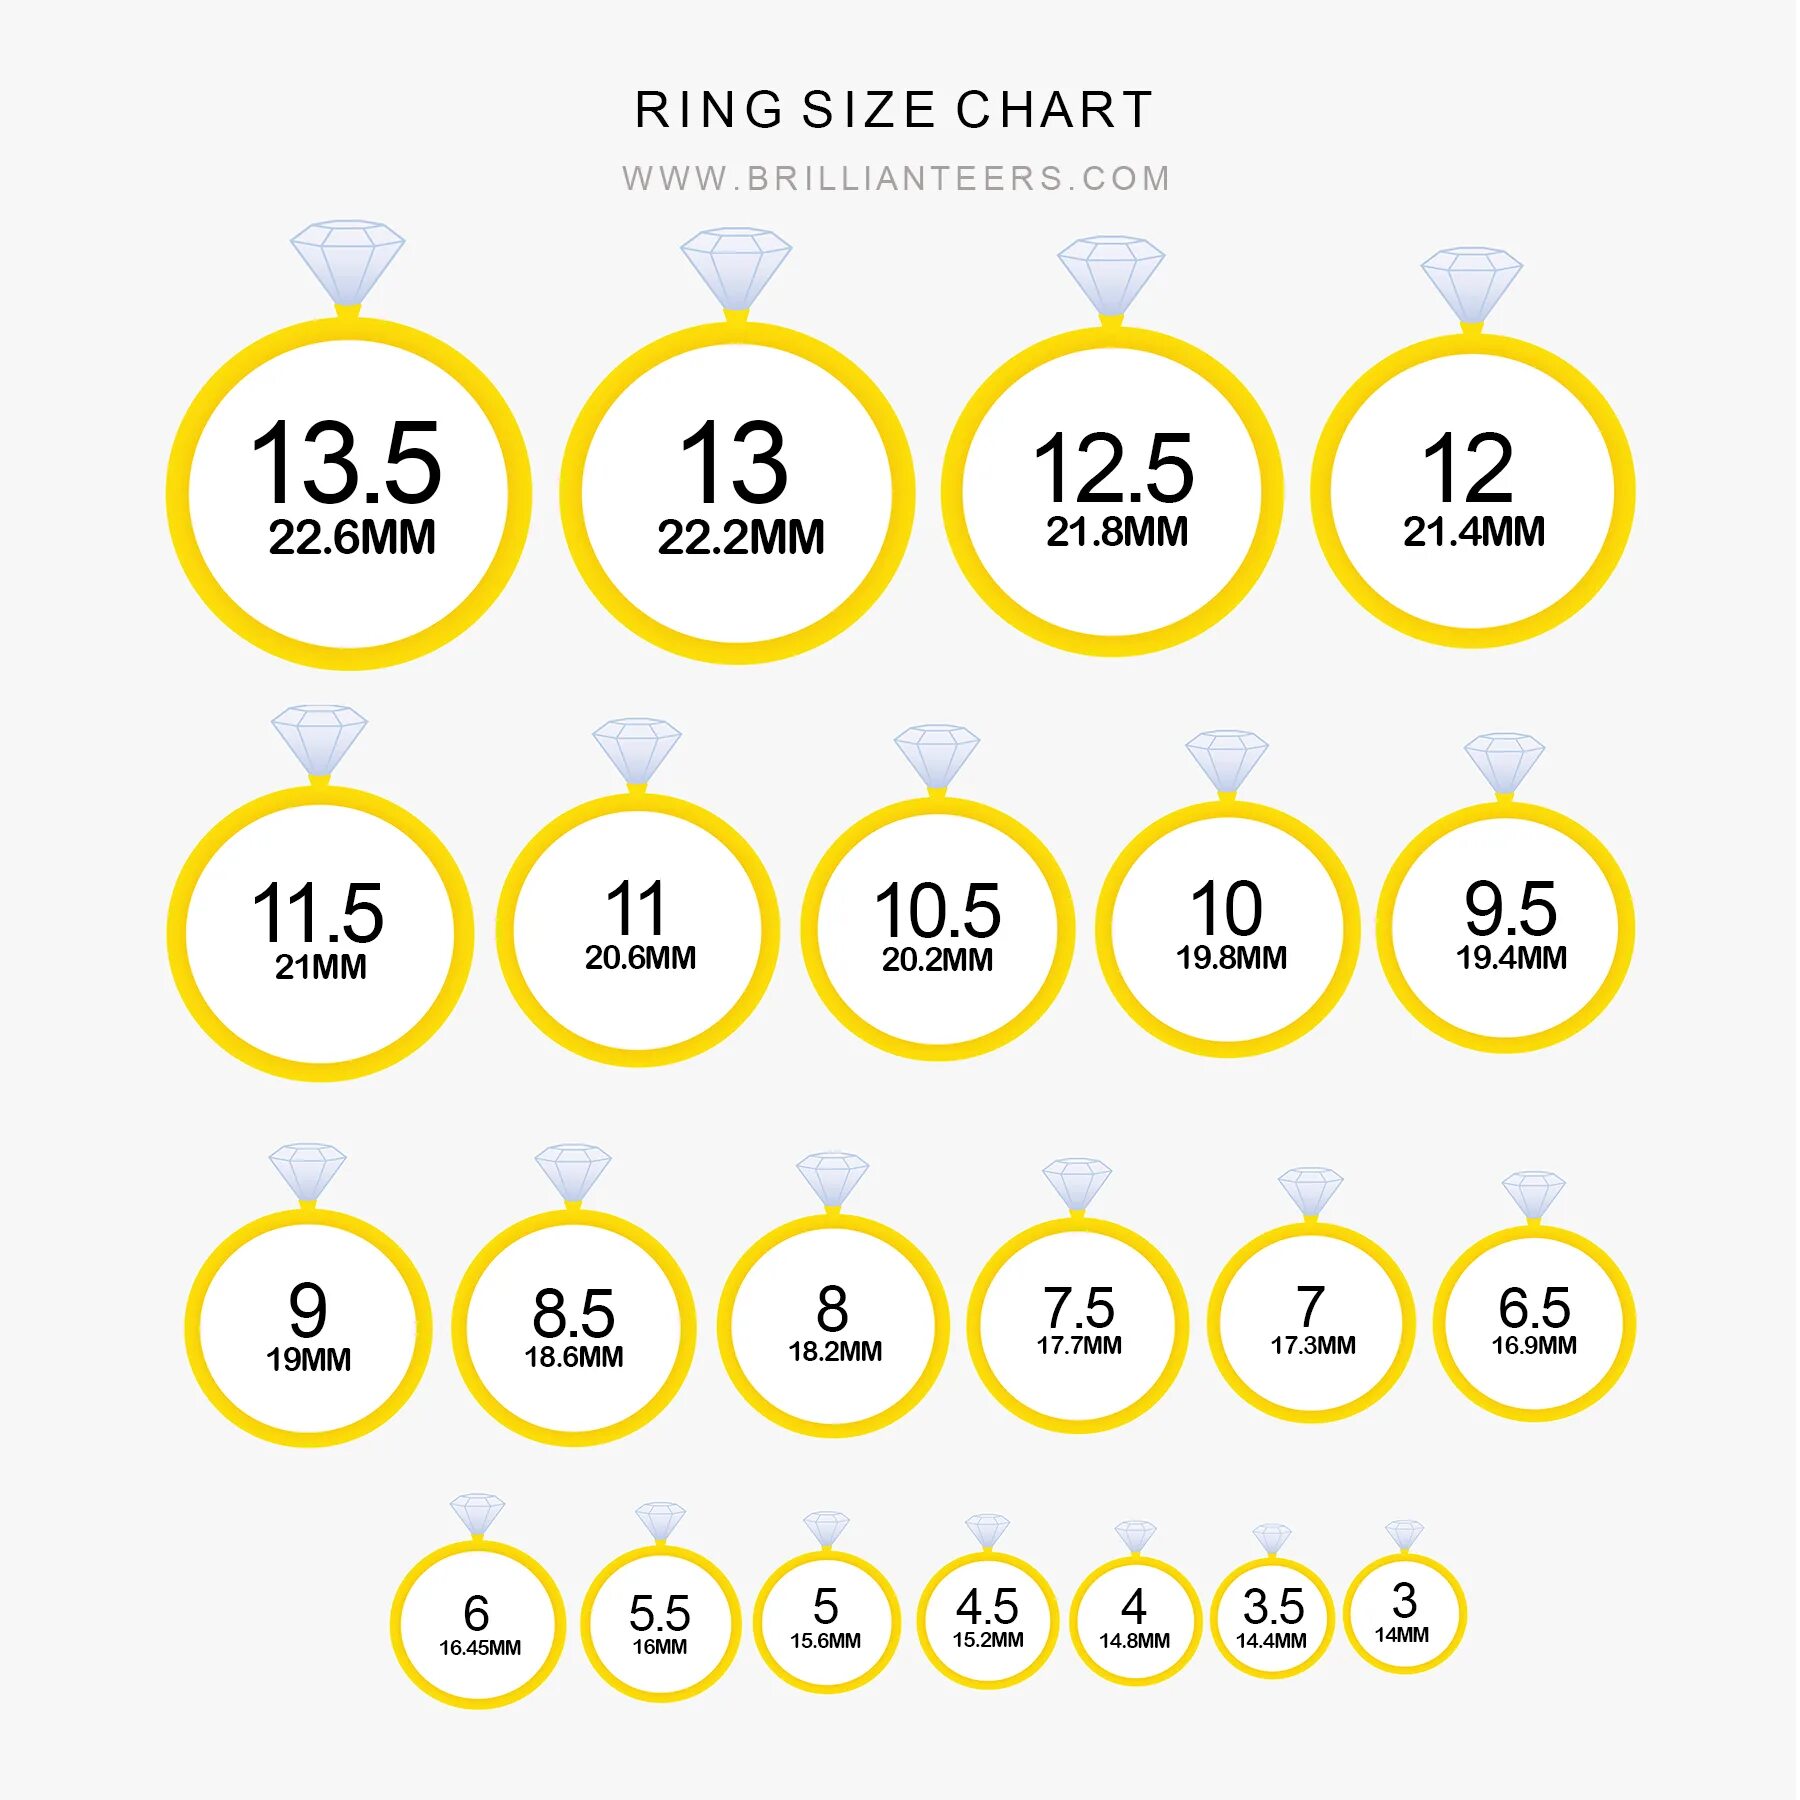 6 Мм размер кольца. 6 Мм кольцо размер диаметр. Размер кольца диаметр 21.3 мм. 7 Мм в диаметре размер кольца.